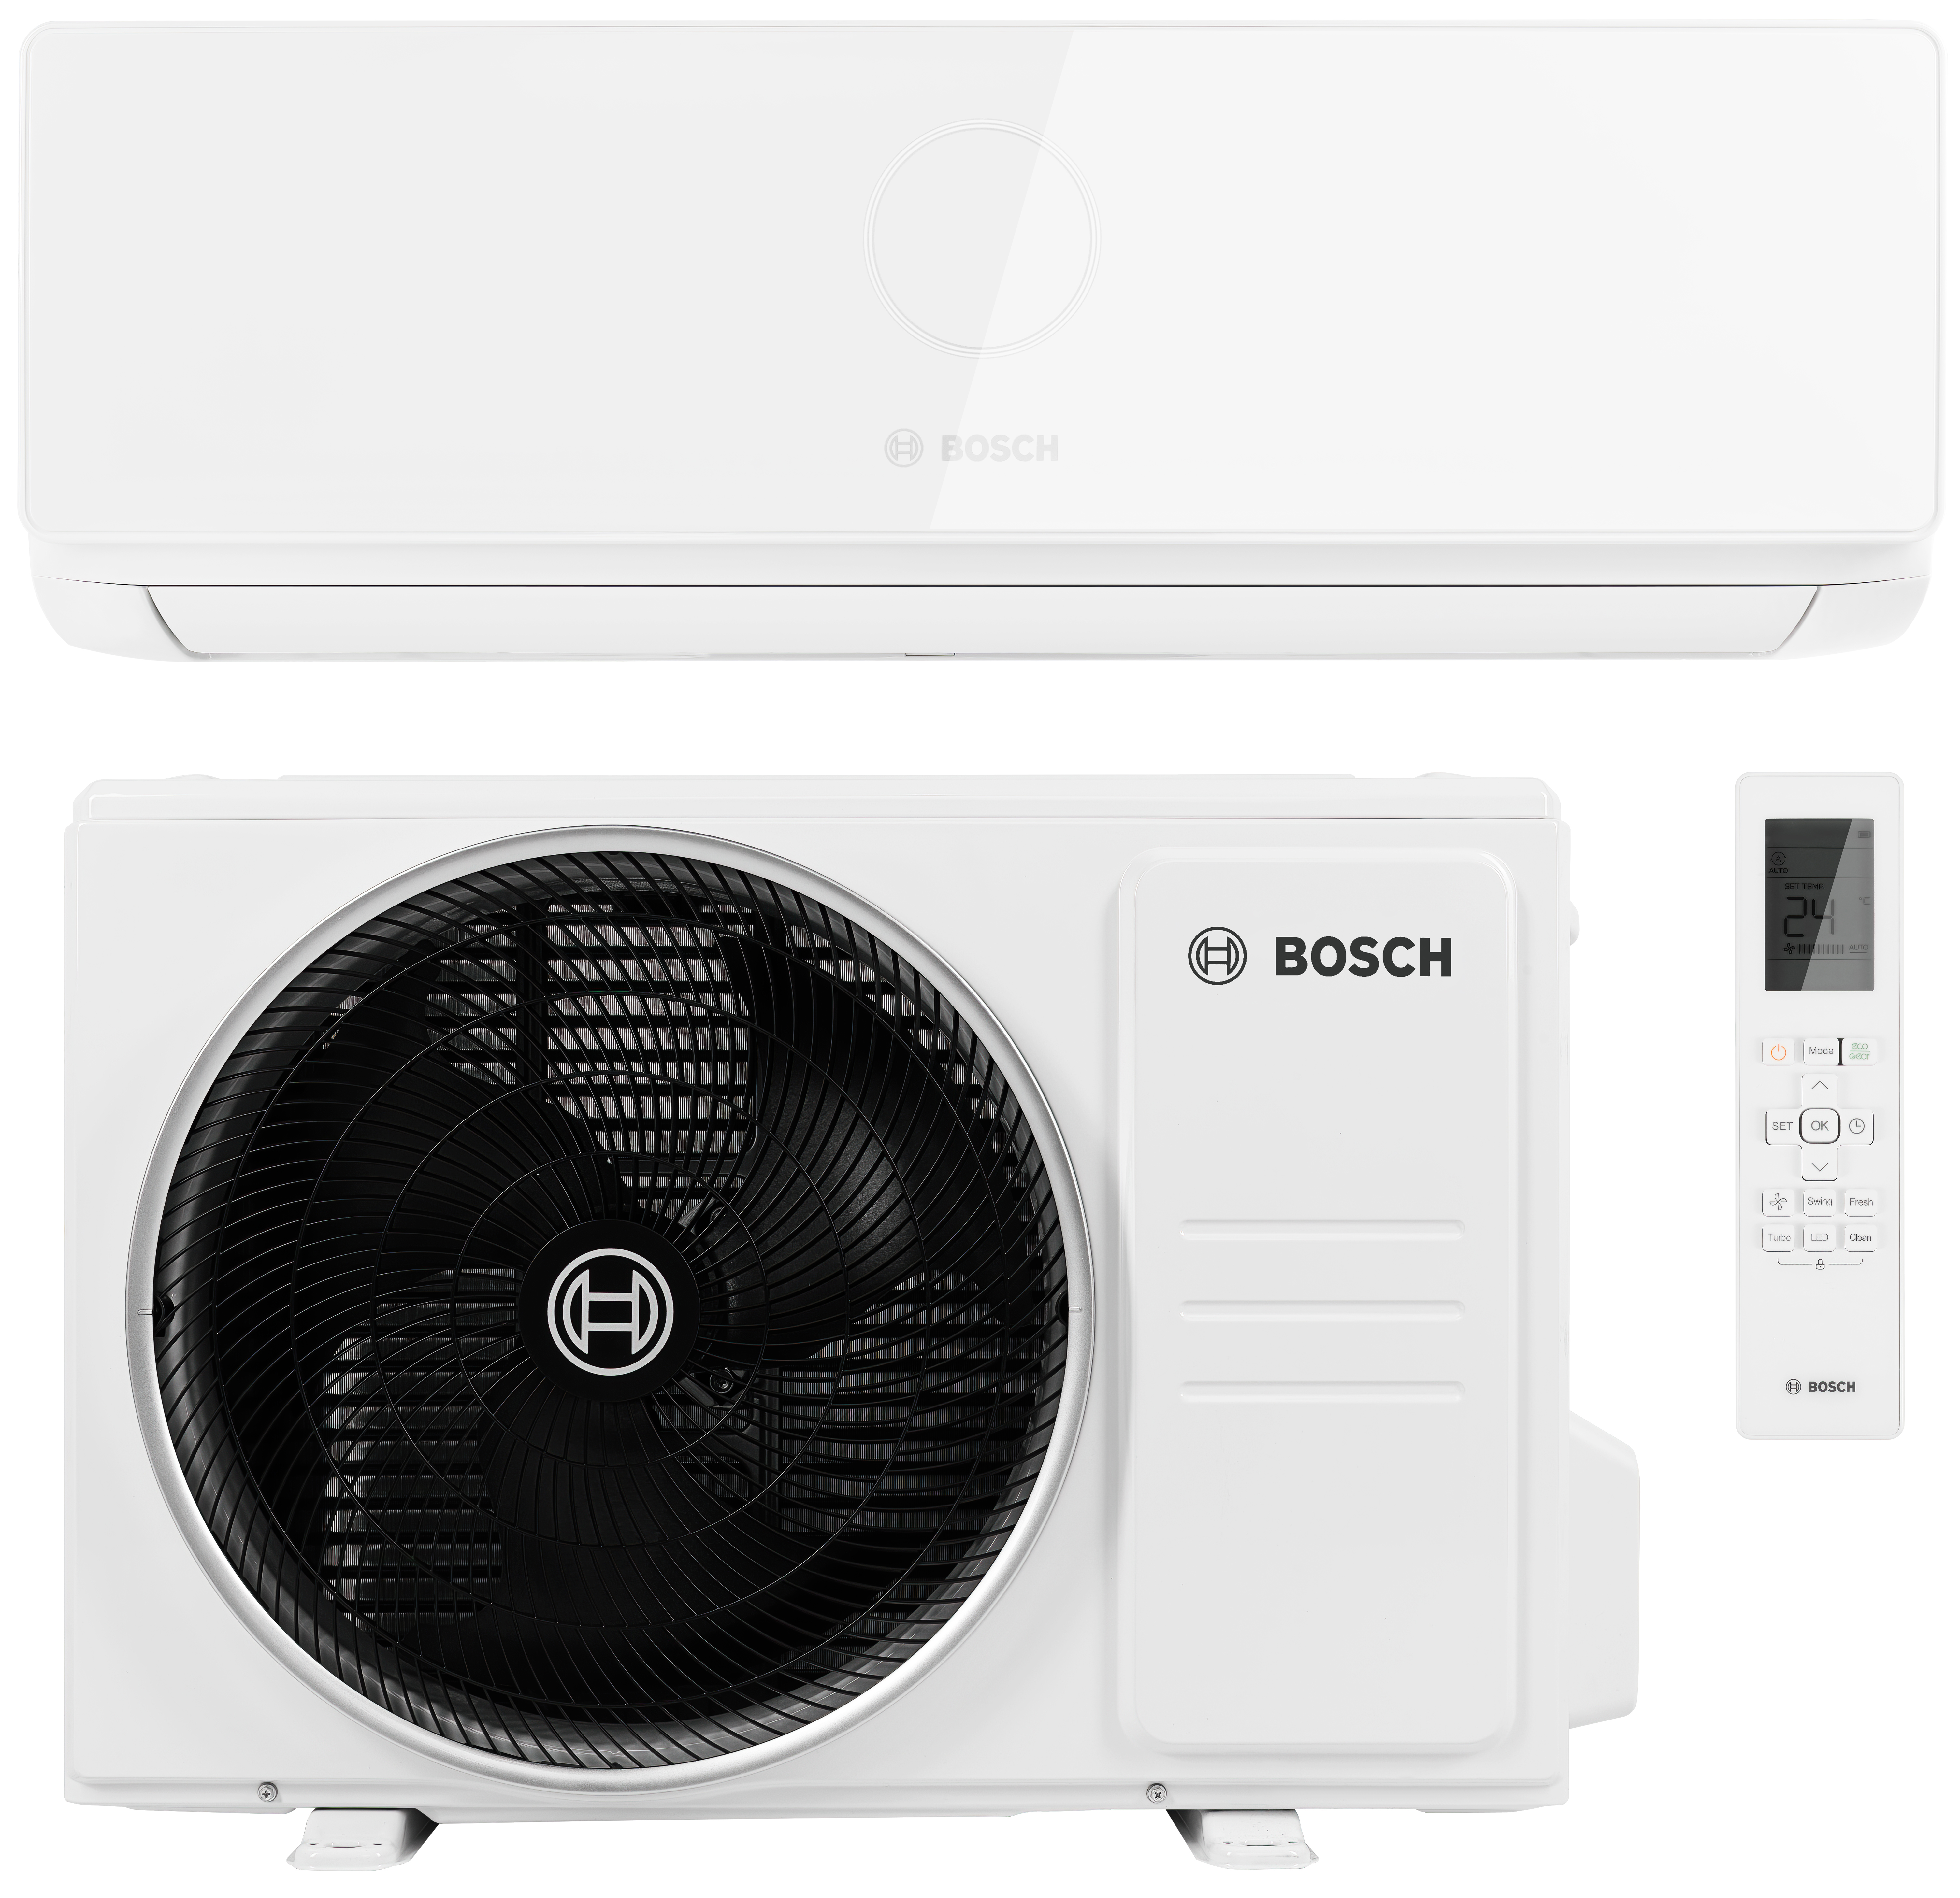 Bosch Climate CL5000i 35 E